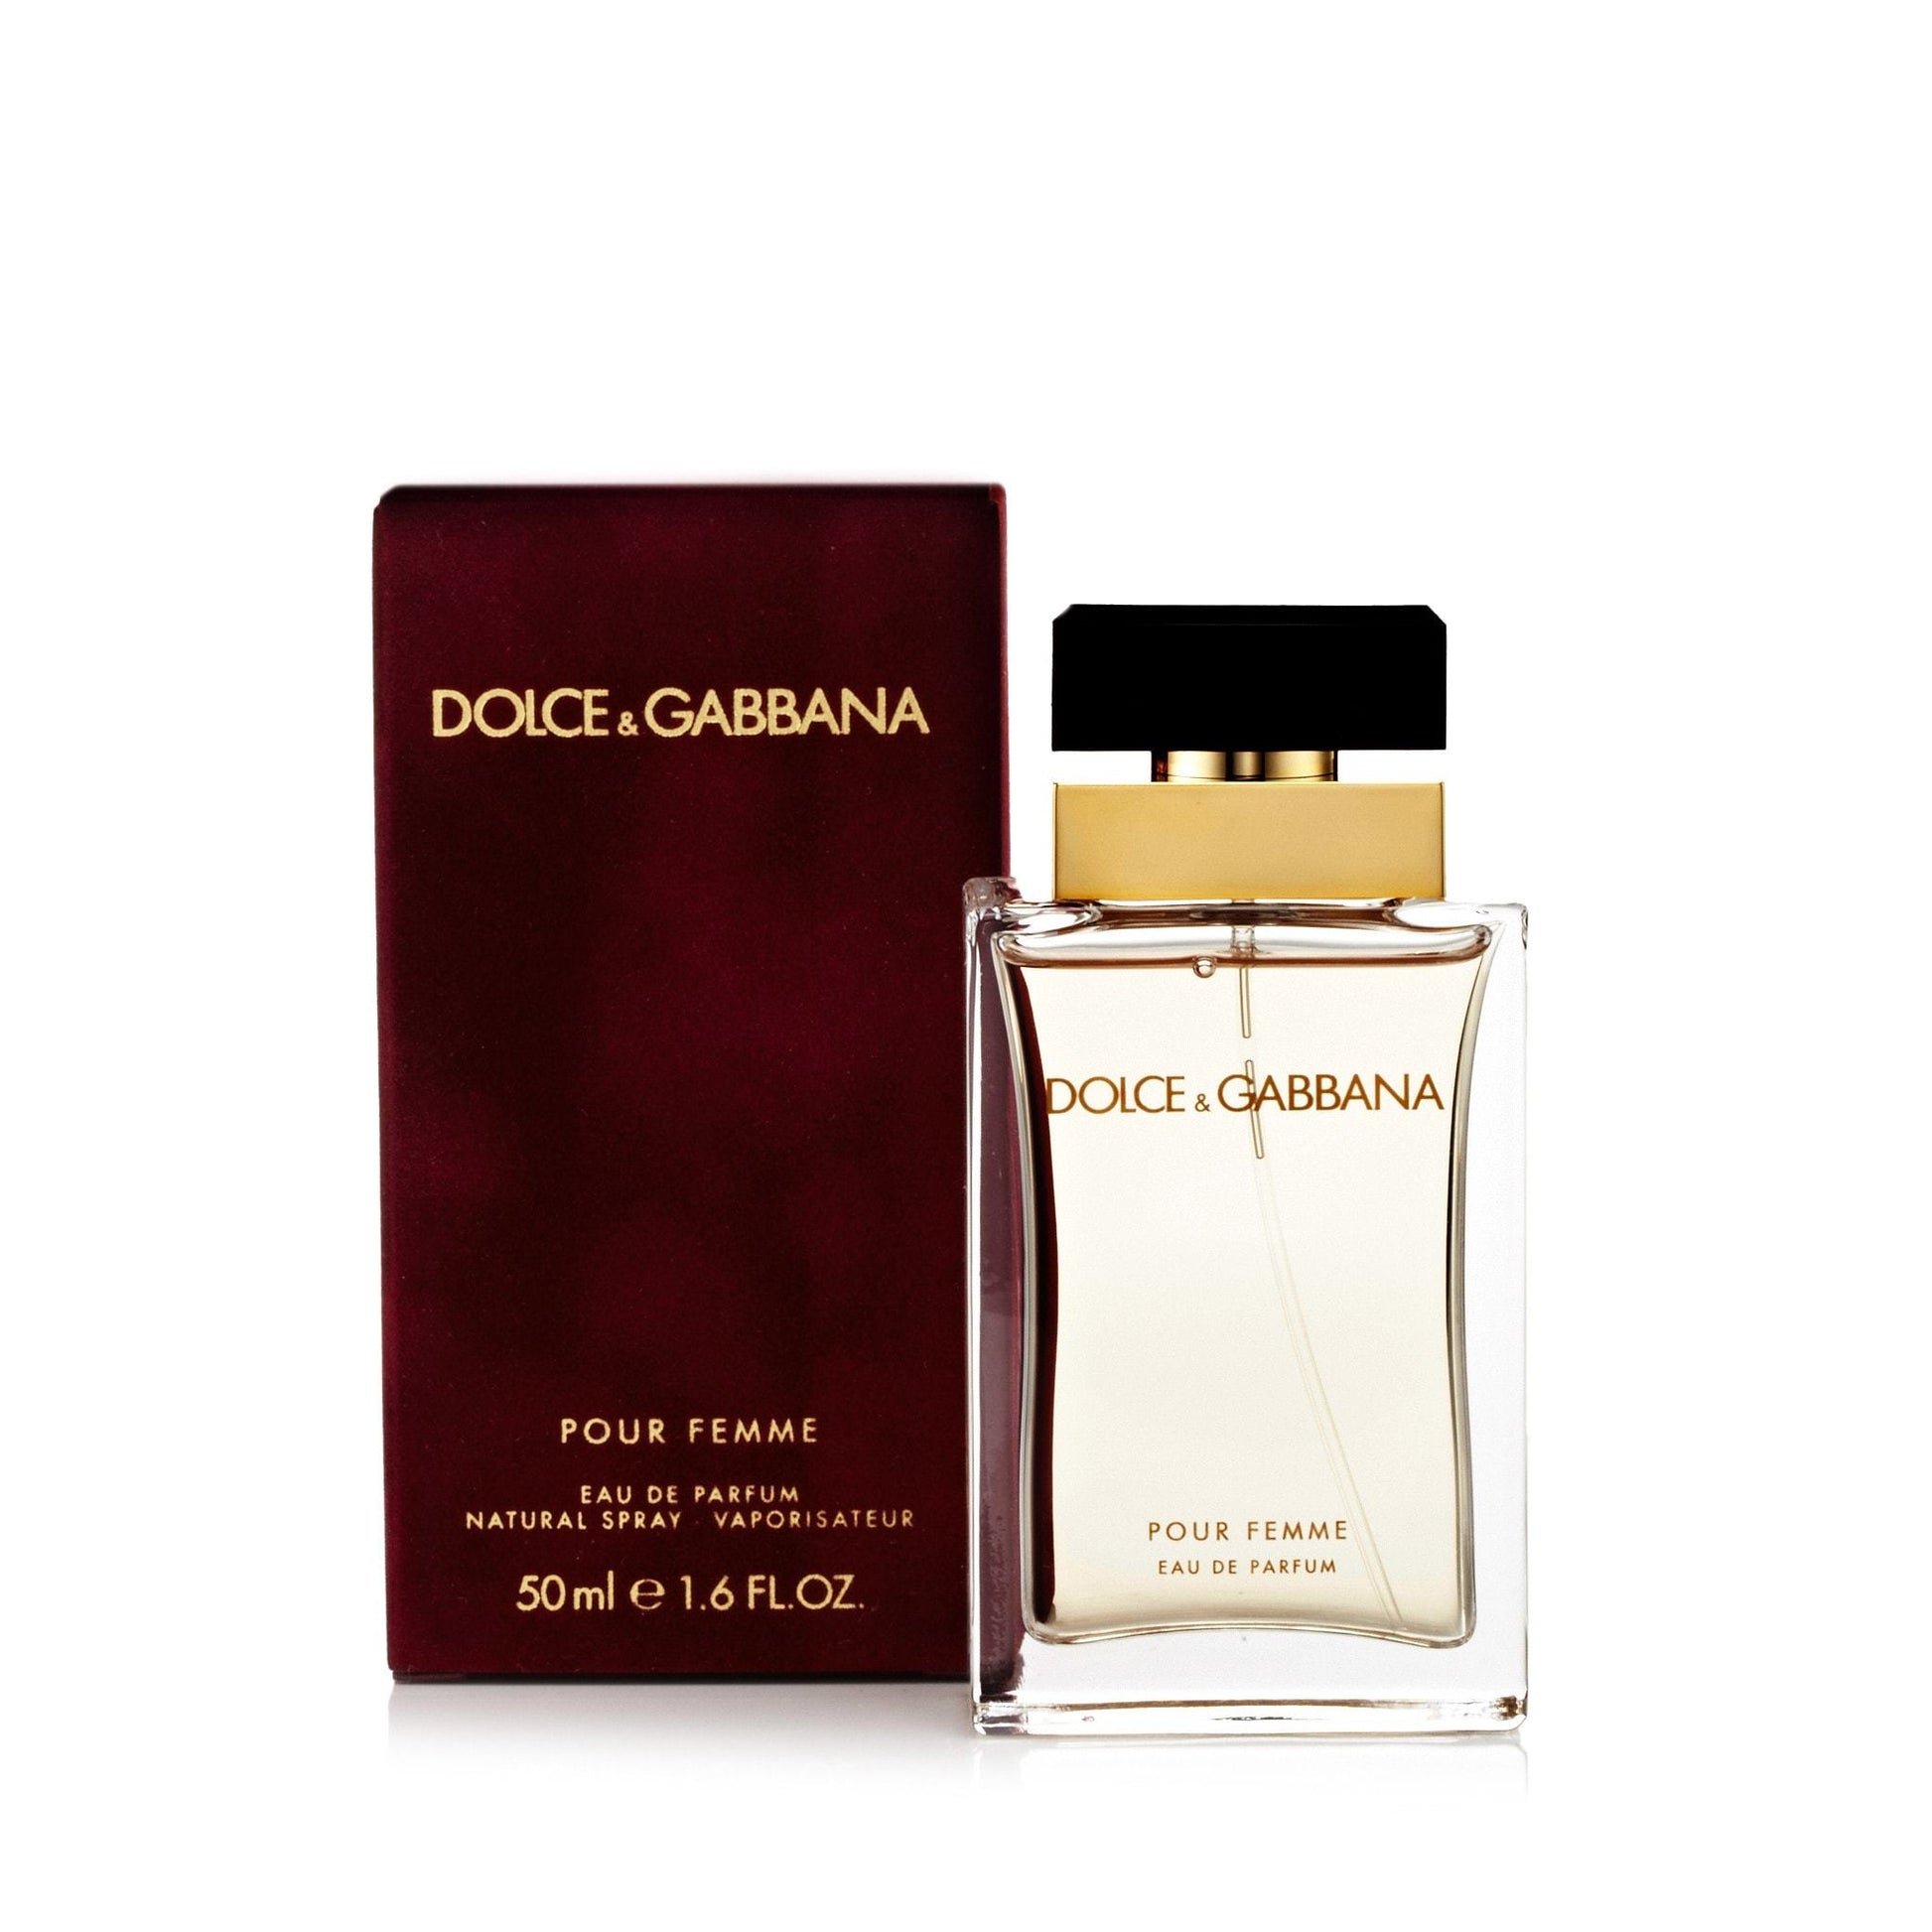 Dolce & Gabbana Femme Eau de Parfum Spray for Women by D&G, Product image 3